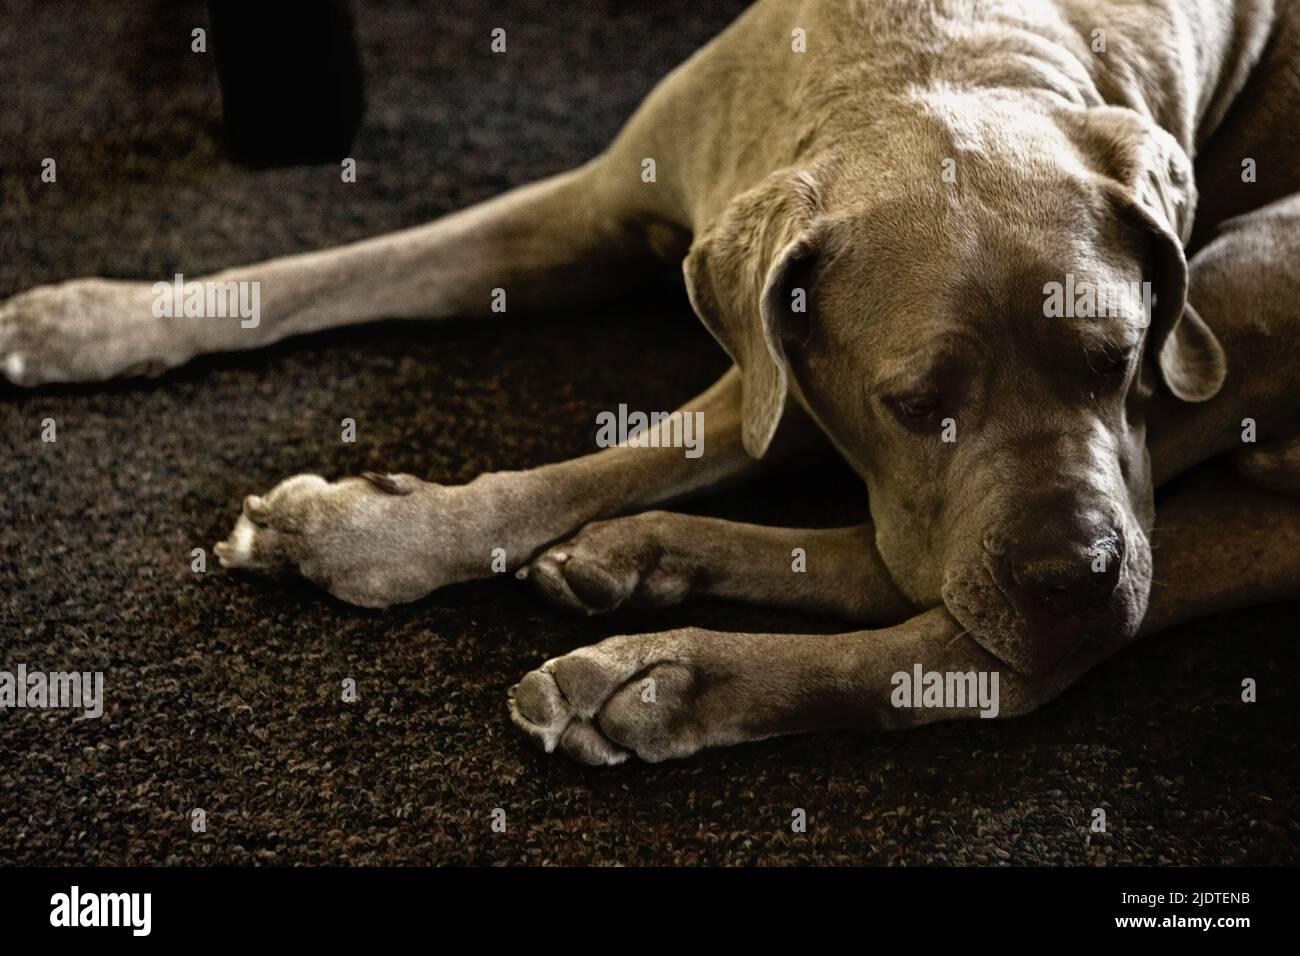 Portrait d'un chien adulte de race pure, un mastiff néopolitain dormant sur un tapis à la maison Banque D'Images